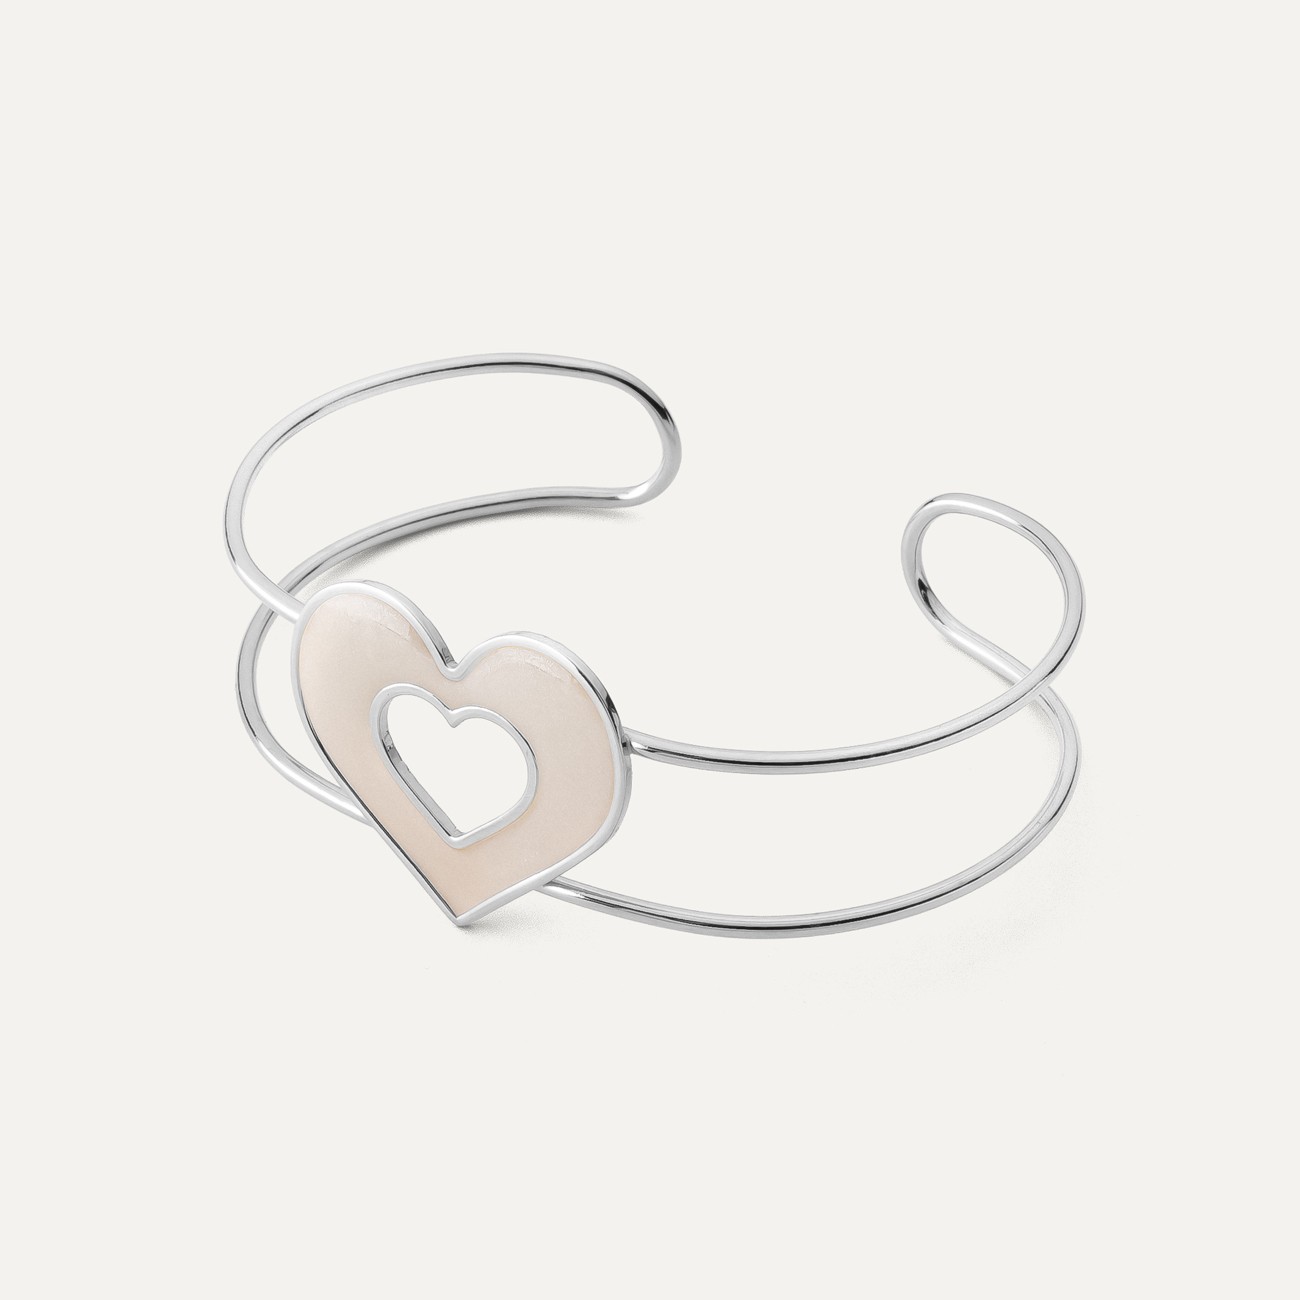 White resin heart bracelet, sterling silver 925